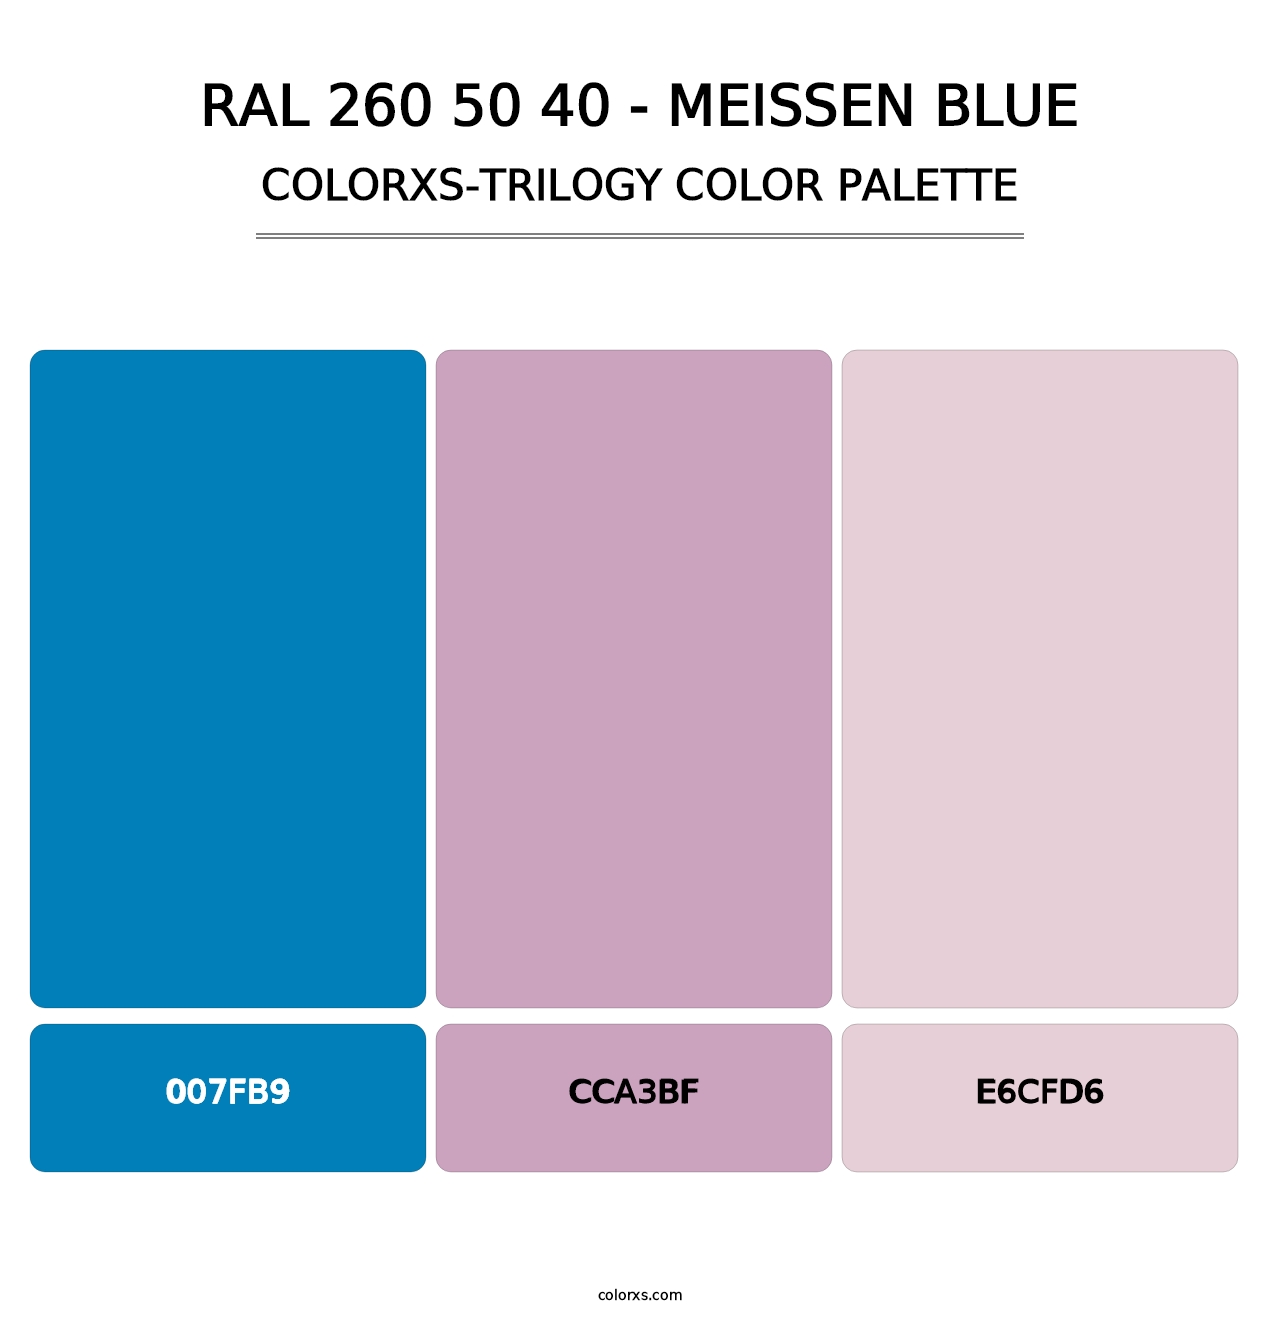 RAL 260 50 40 - Meissen Blue - Colorxs Trilogy Palette